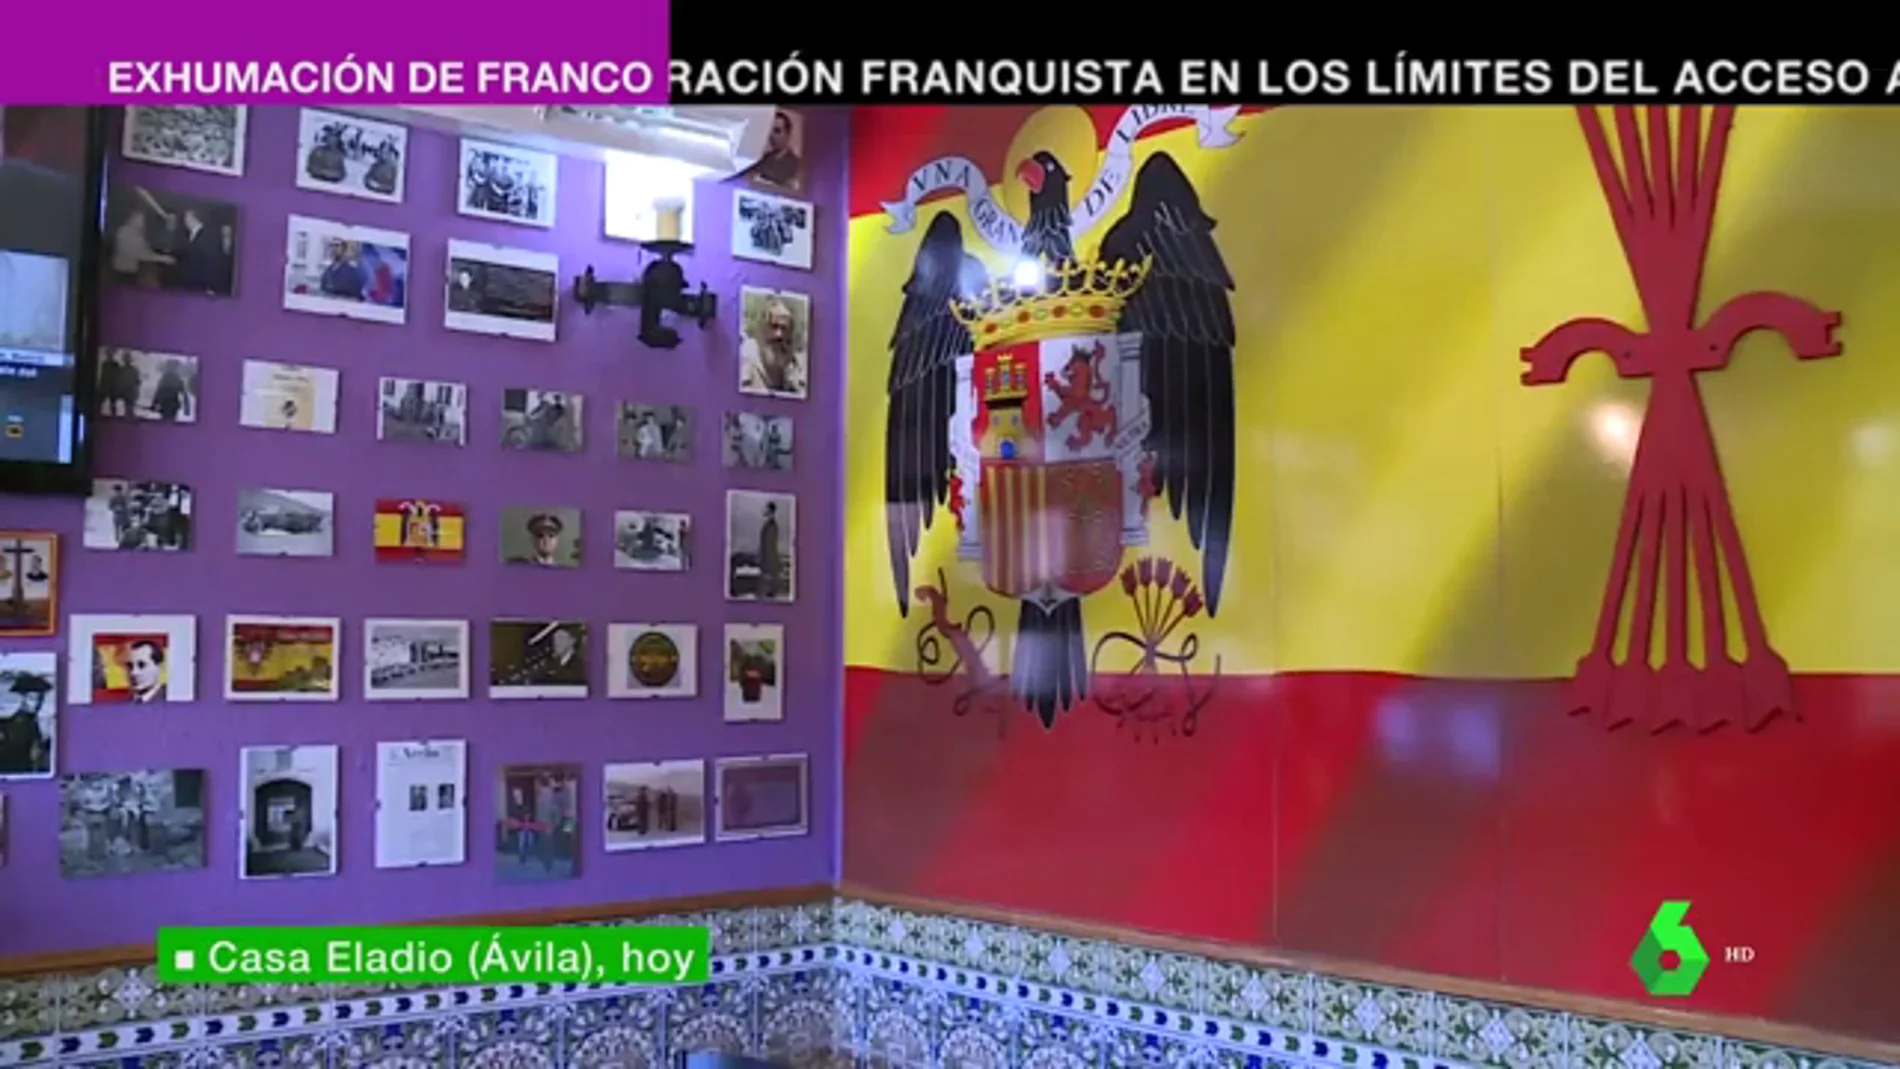 Celebraciones con la Internacional como himno frente a la nostalgia franquista: las dos caras de la exhumación de Franco